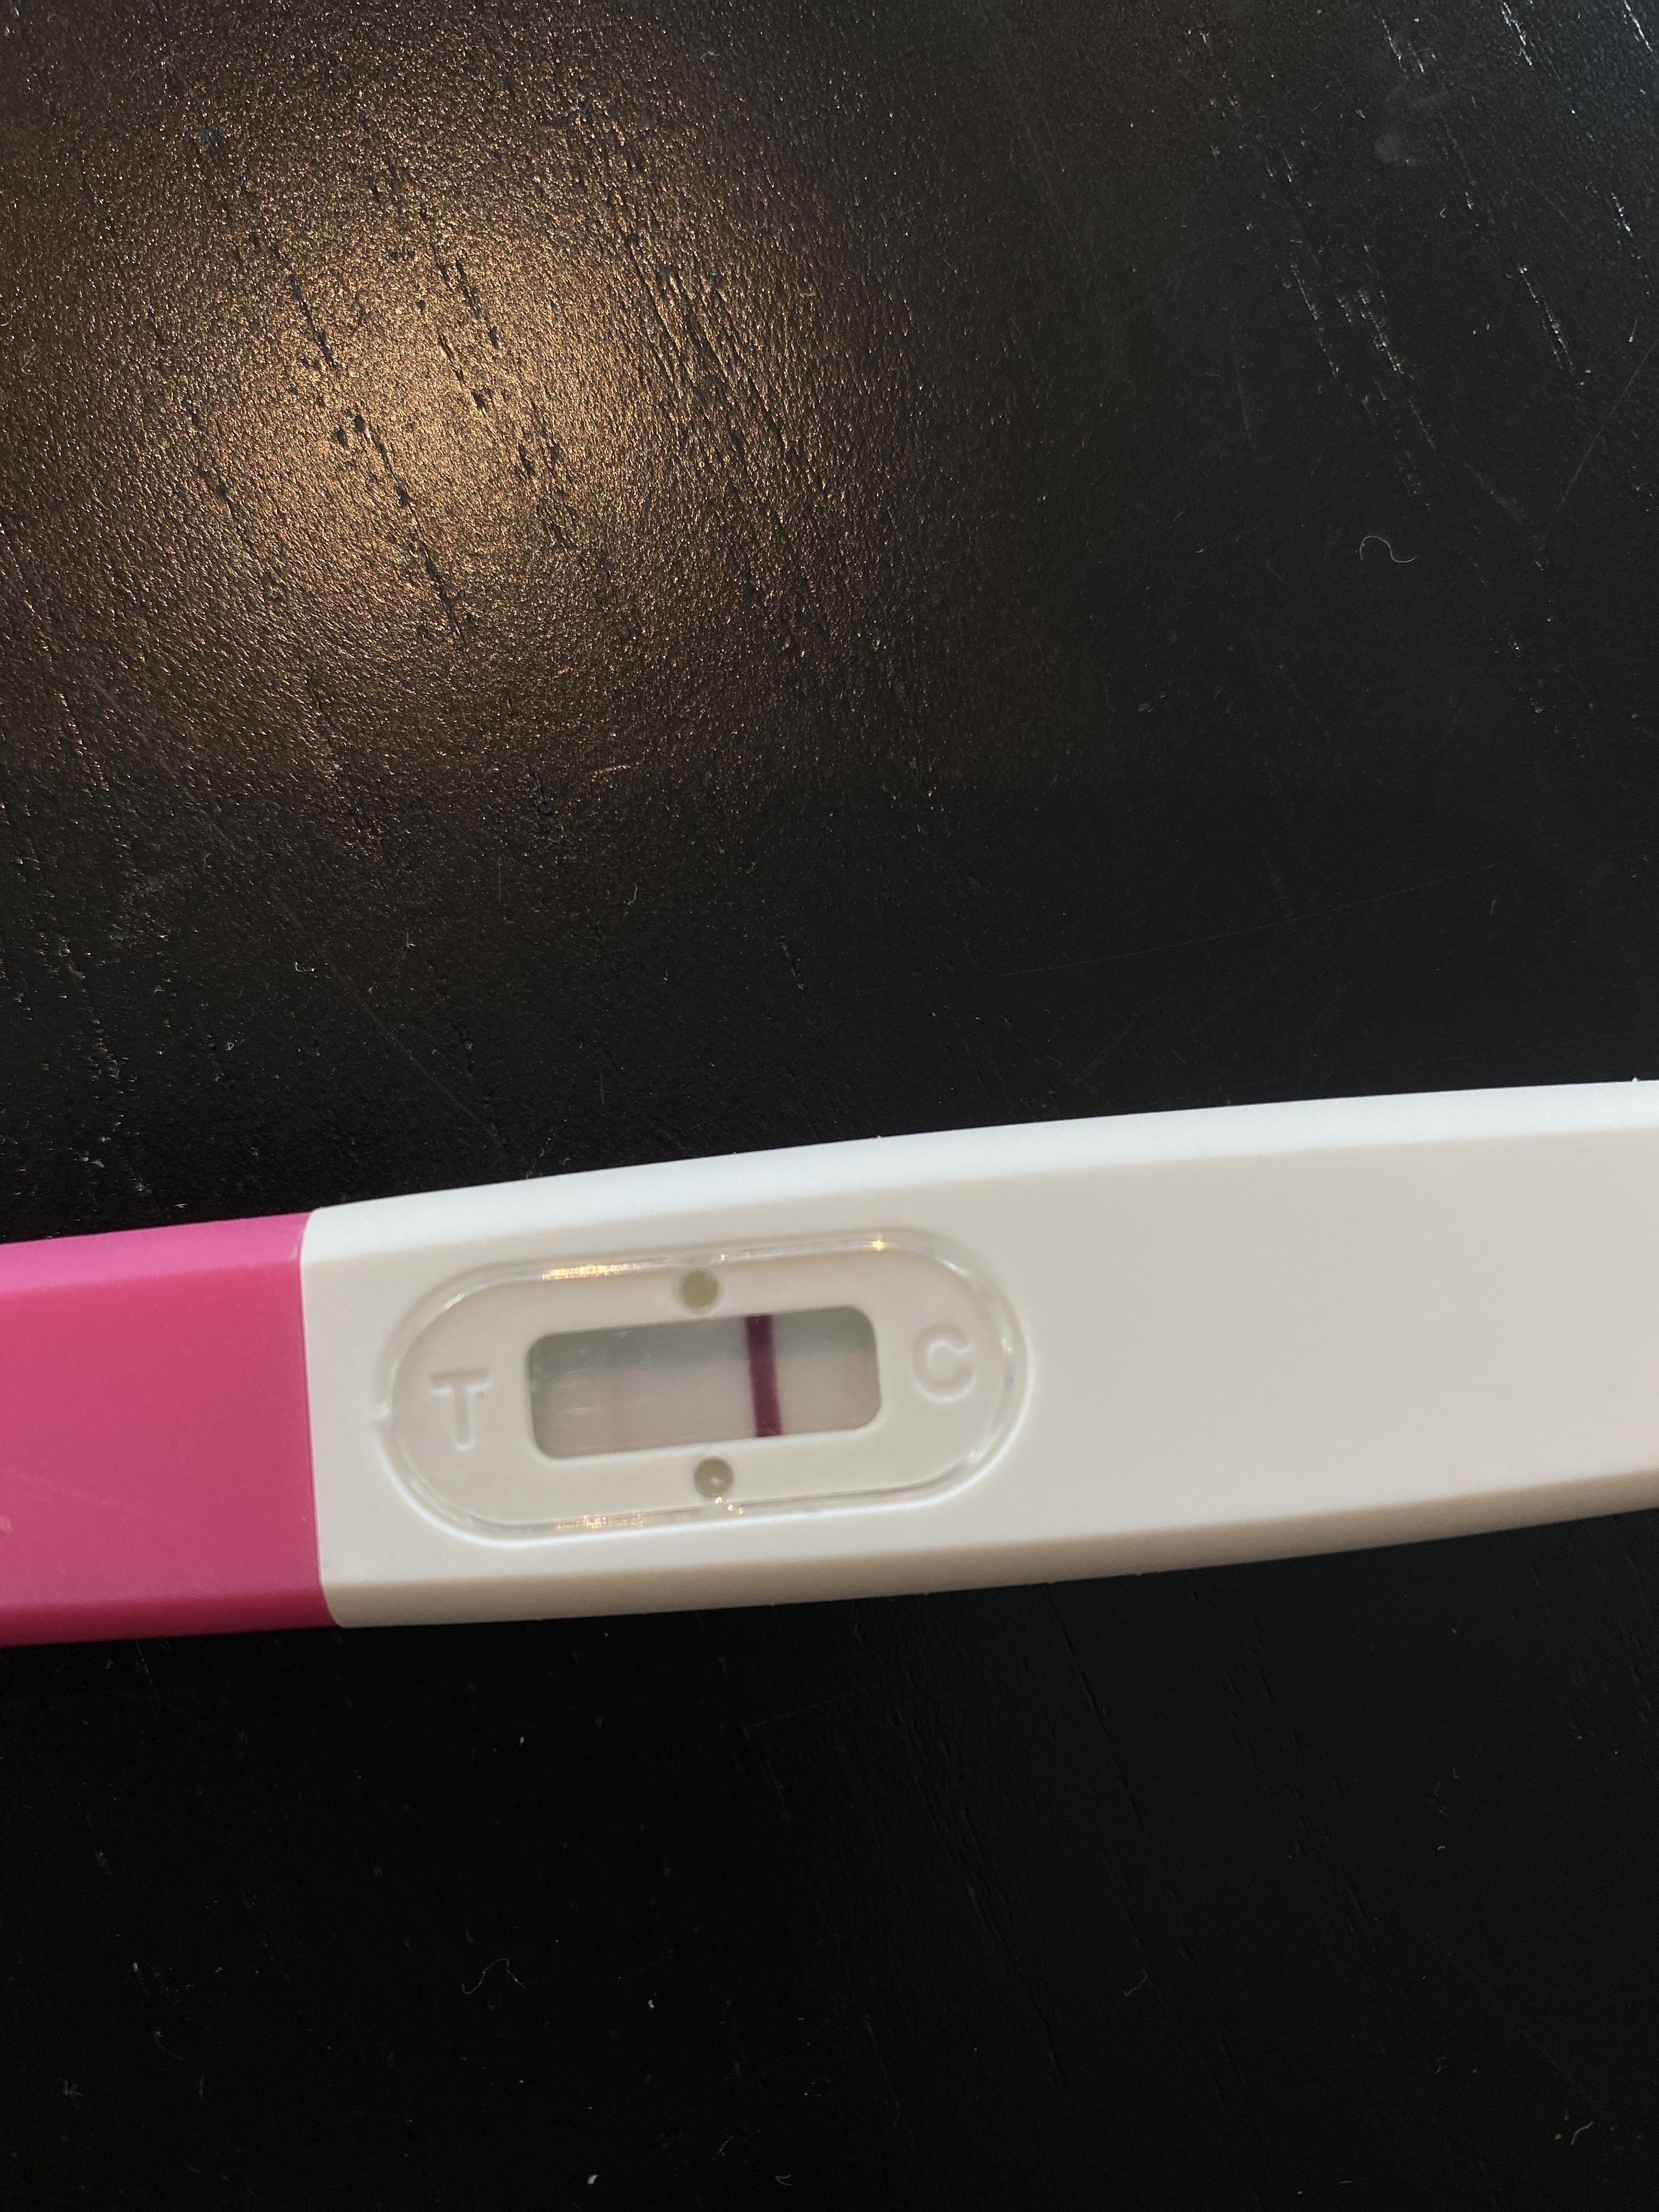 har dere fått negativ graviditetstest etter abort? Min er fortsatt positiv - Graviditet, spedbarn og babytiden - Kvinneguiden Forum